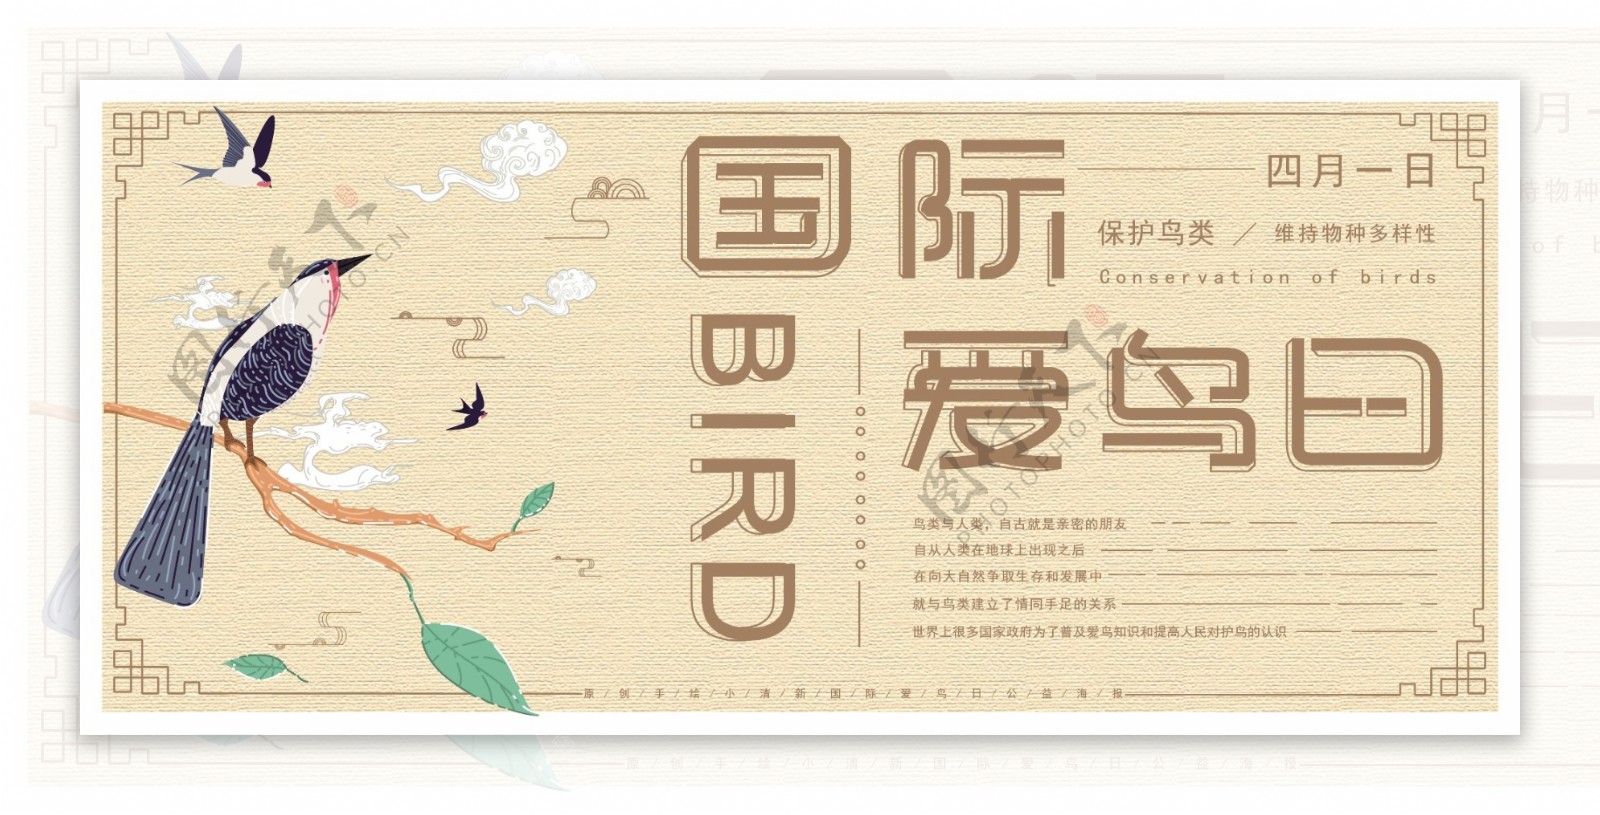 原创手绘中国风国际爱鸟日公益展板